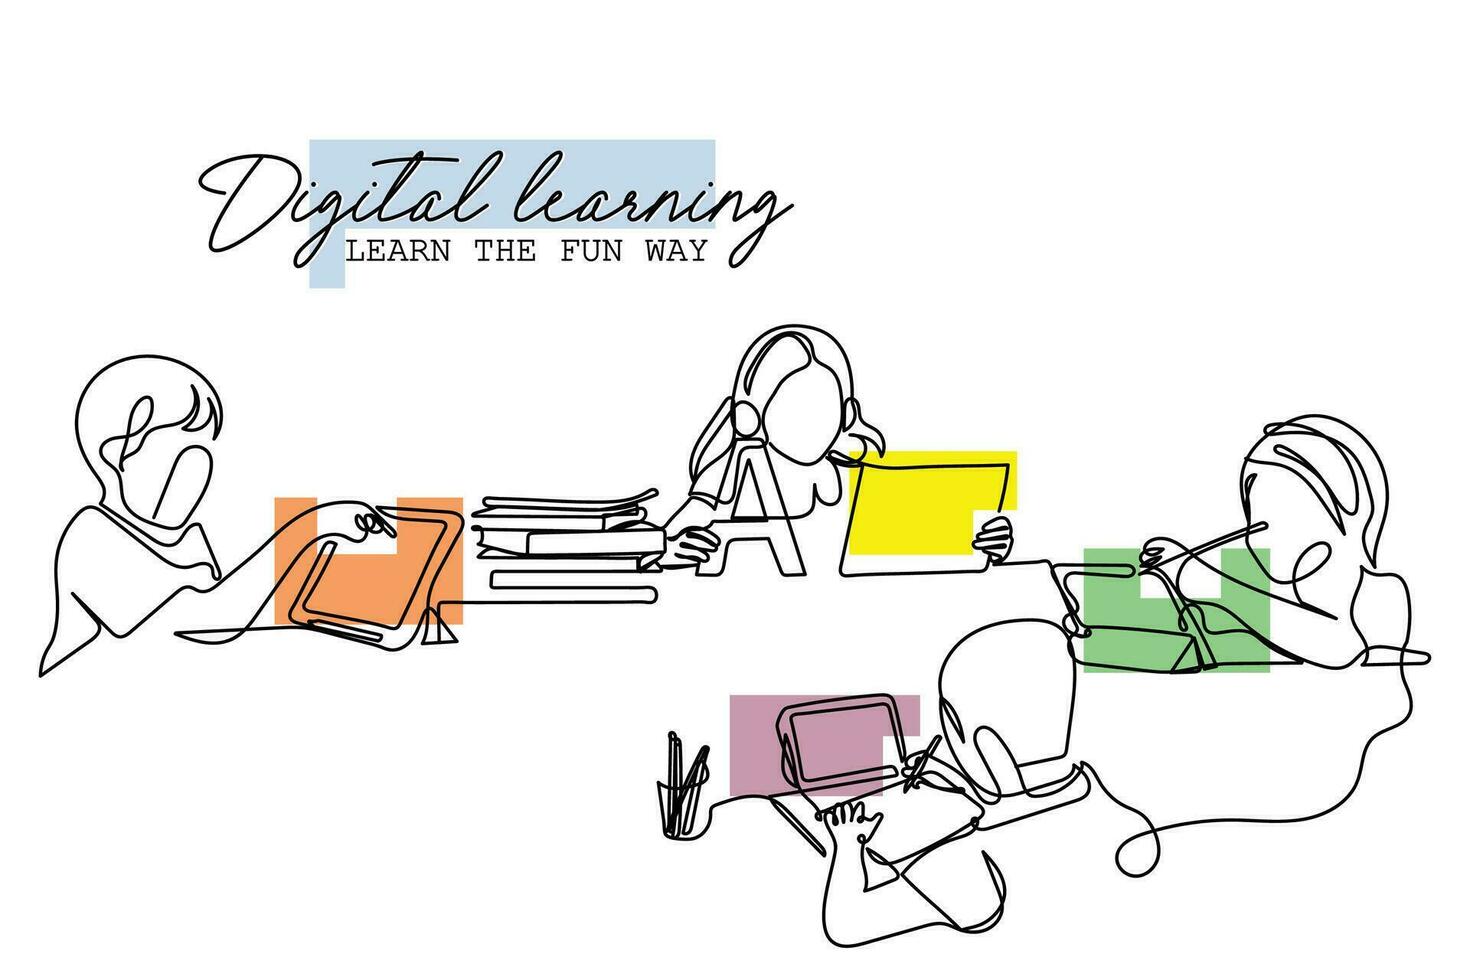 en ligne apprentissage. numérique apprentissage. virtuel Des classes. apprentissage amusement façon. vecteur